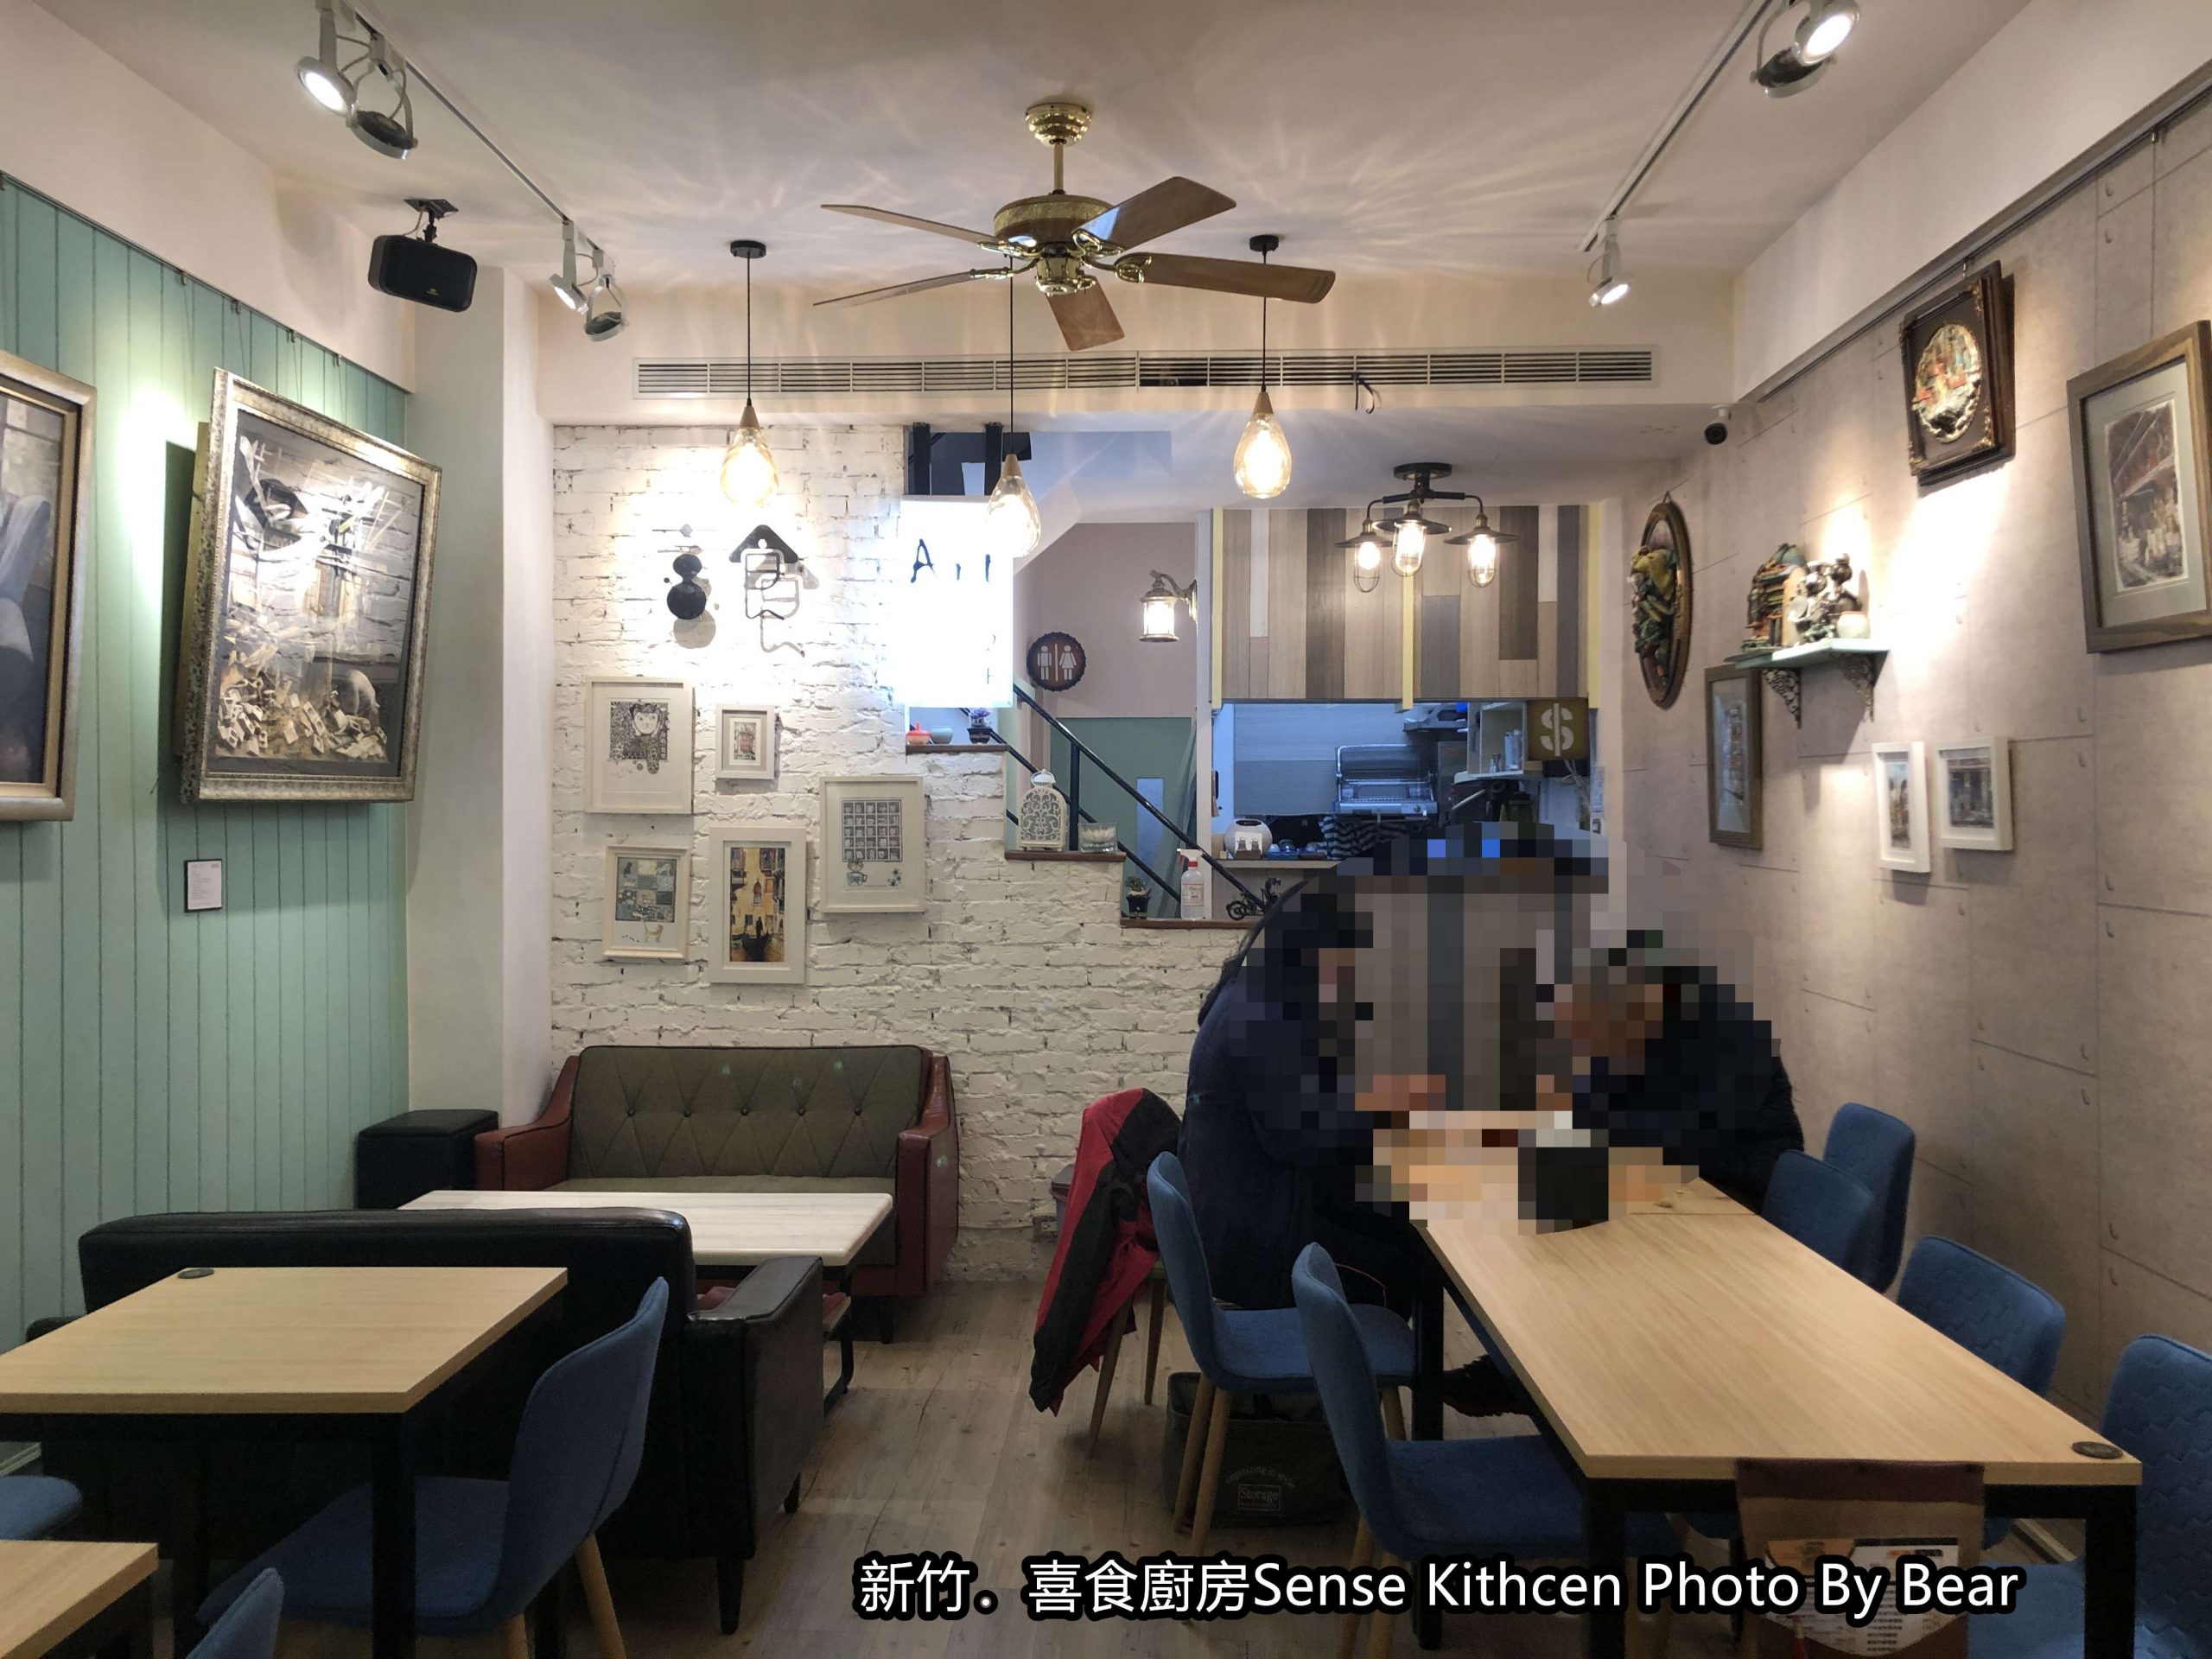 【新竹】「喜食廚房Sense Kitchen．藝術品佐餐食，視覺與味覺的雙重享受（獨家咖哩/義式料理/中式簡餐/彩堡/近天公壇）」